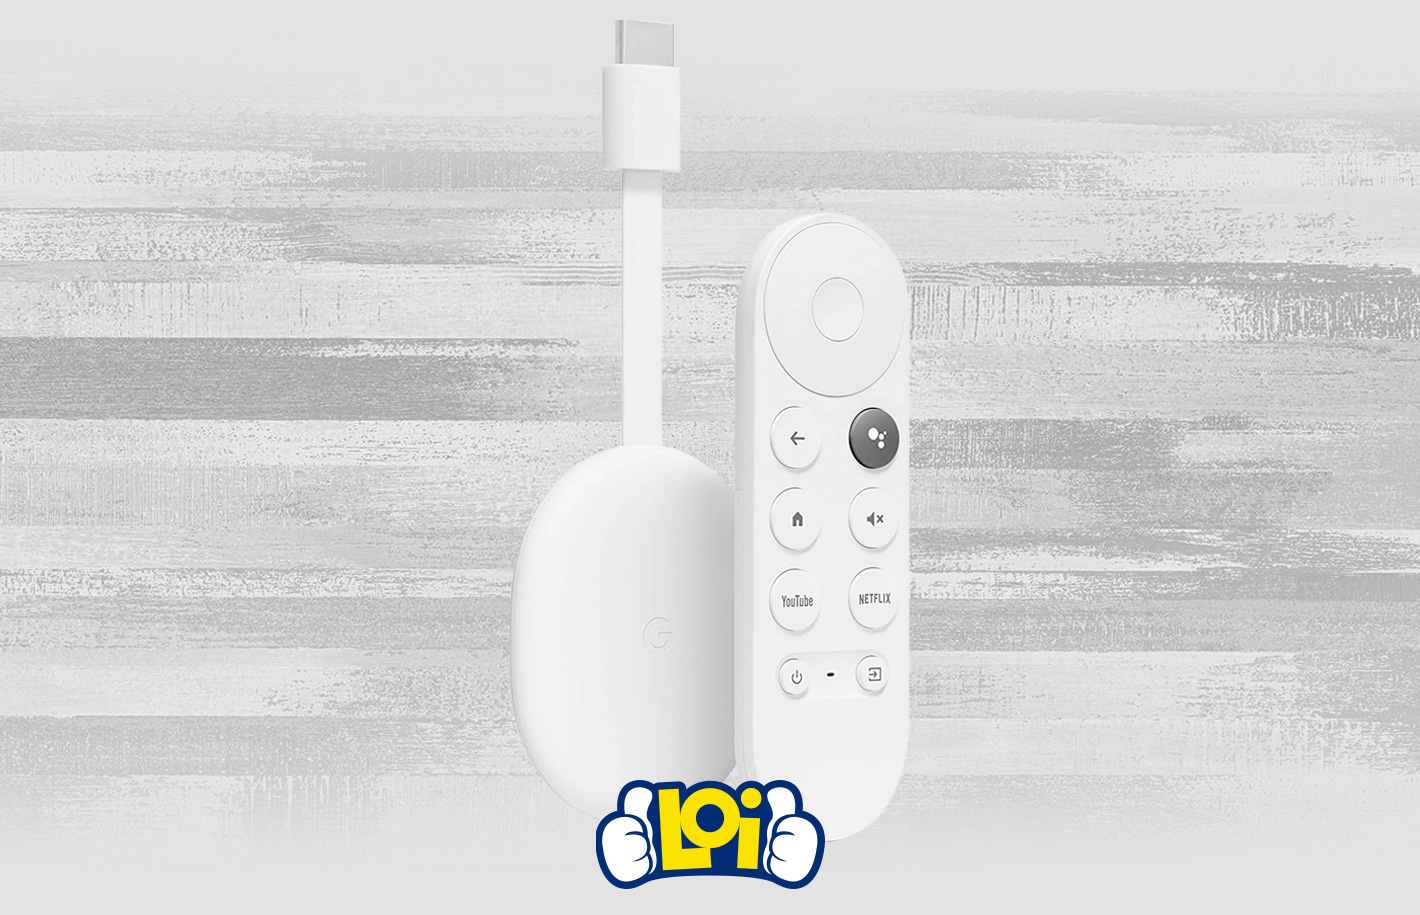 Chromecast con Google TV (4K) - Entretenimiento en streaming, en tu TV y  con búsqueda por voz 